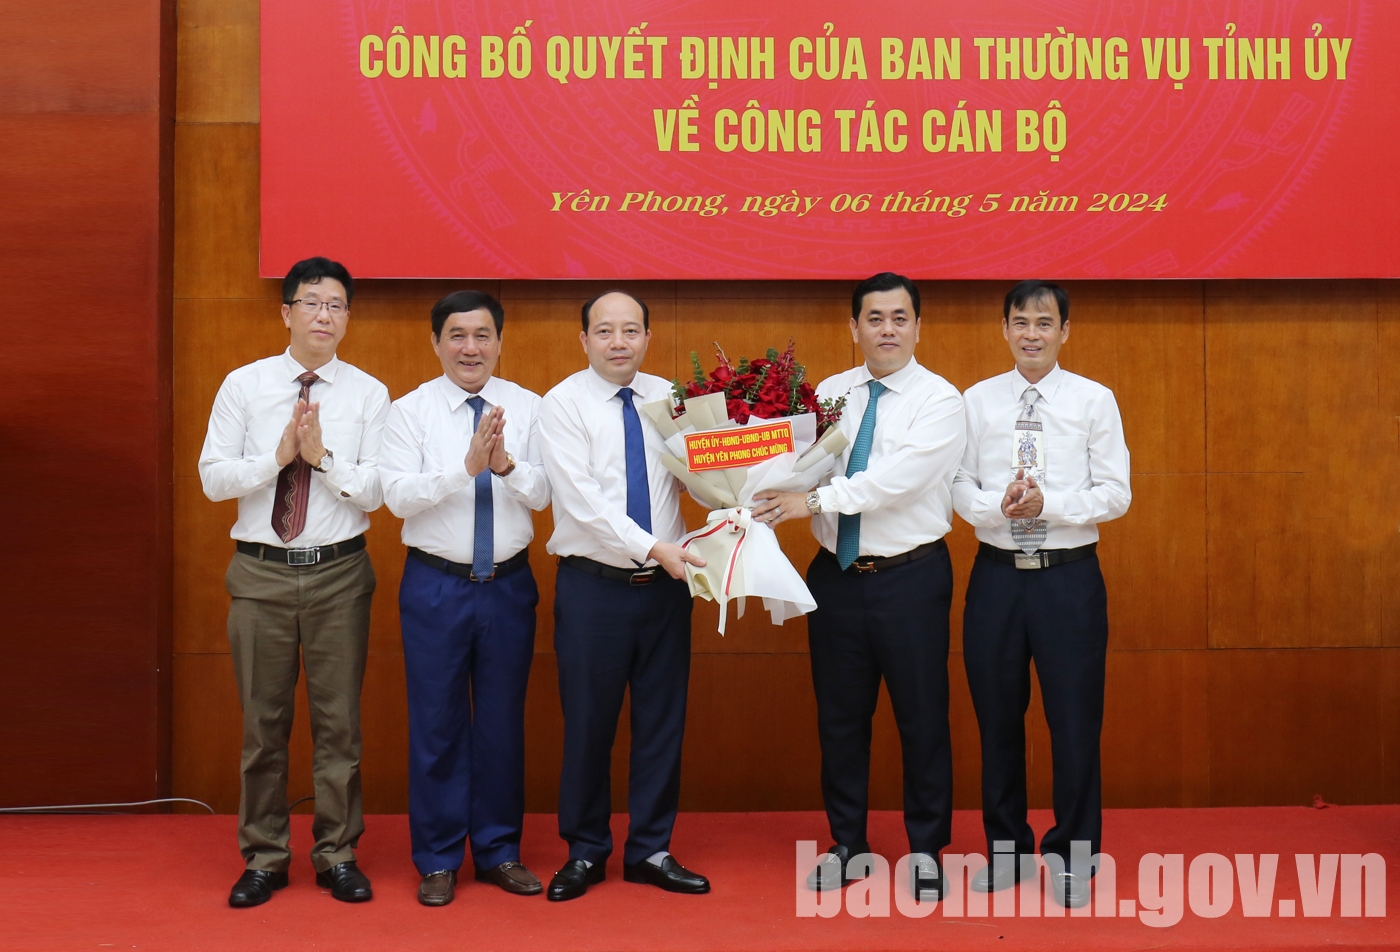 Bắc Ninh: Chủ tịch UBND thành phố Từ Sơn Hoàng Bá Huy được điều động làm Bí thư Huyện ủy Yên Phong- Ảnh 4.